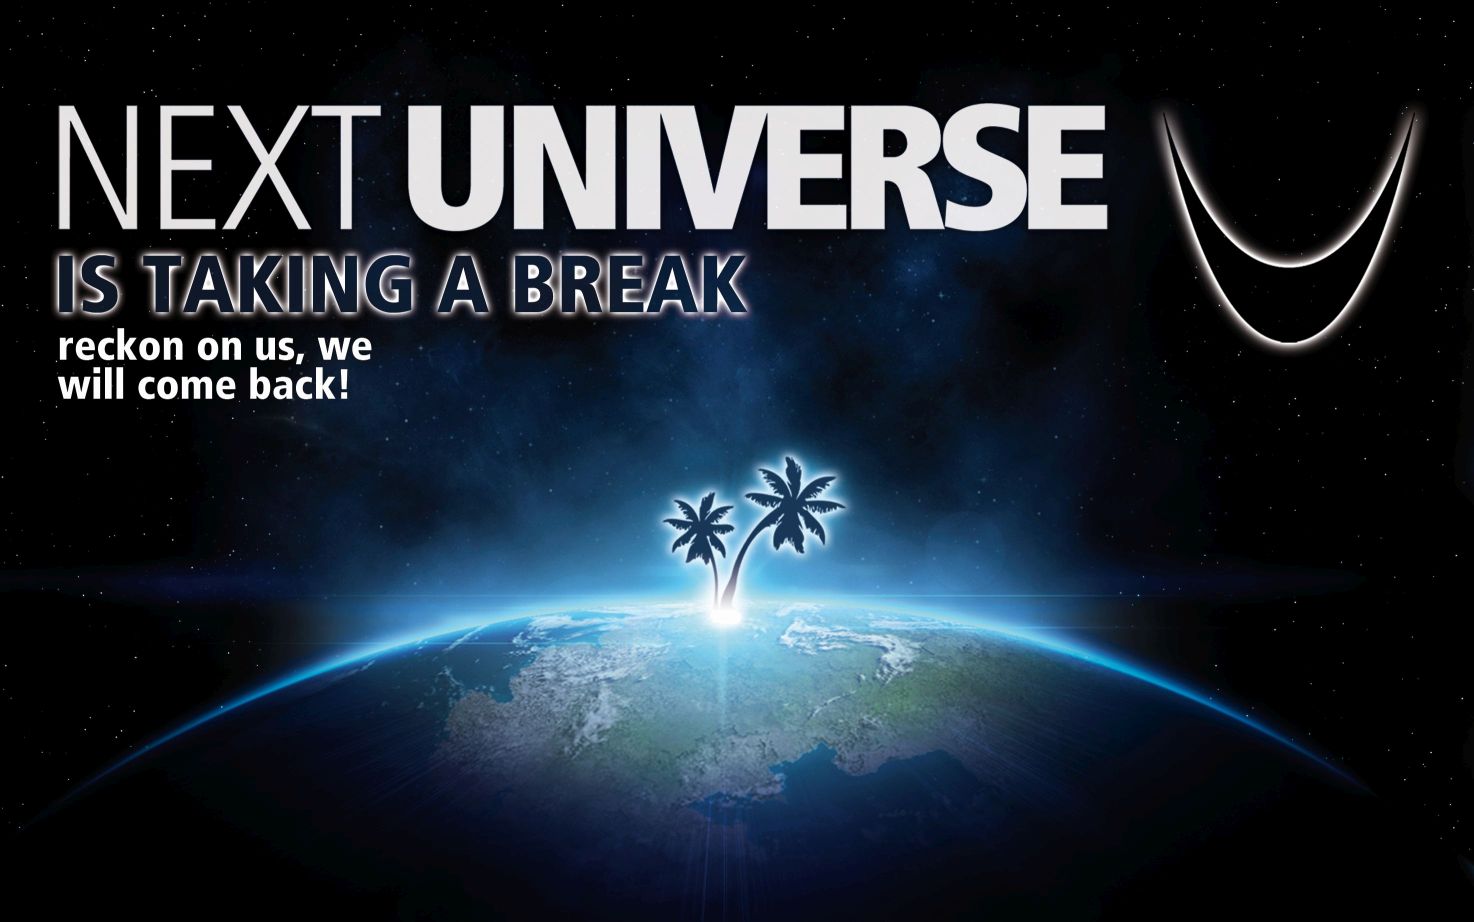 NEXT UNIVERSE is taking a break.